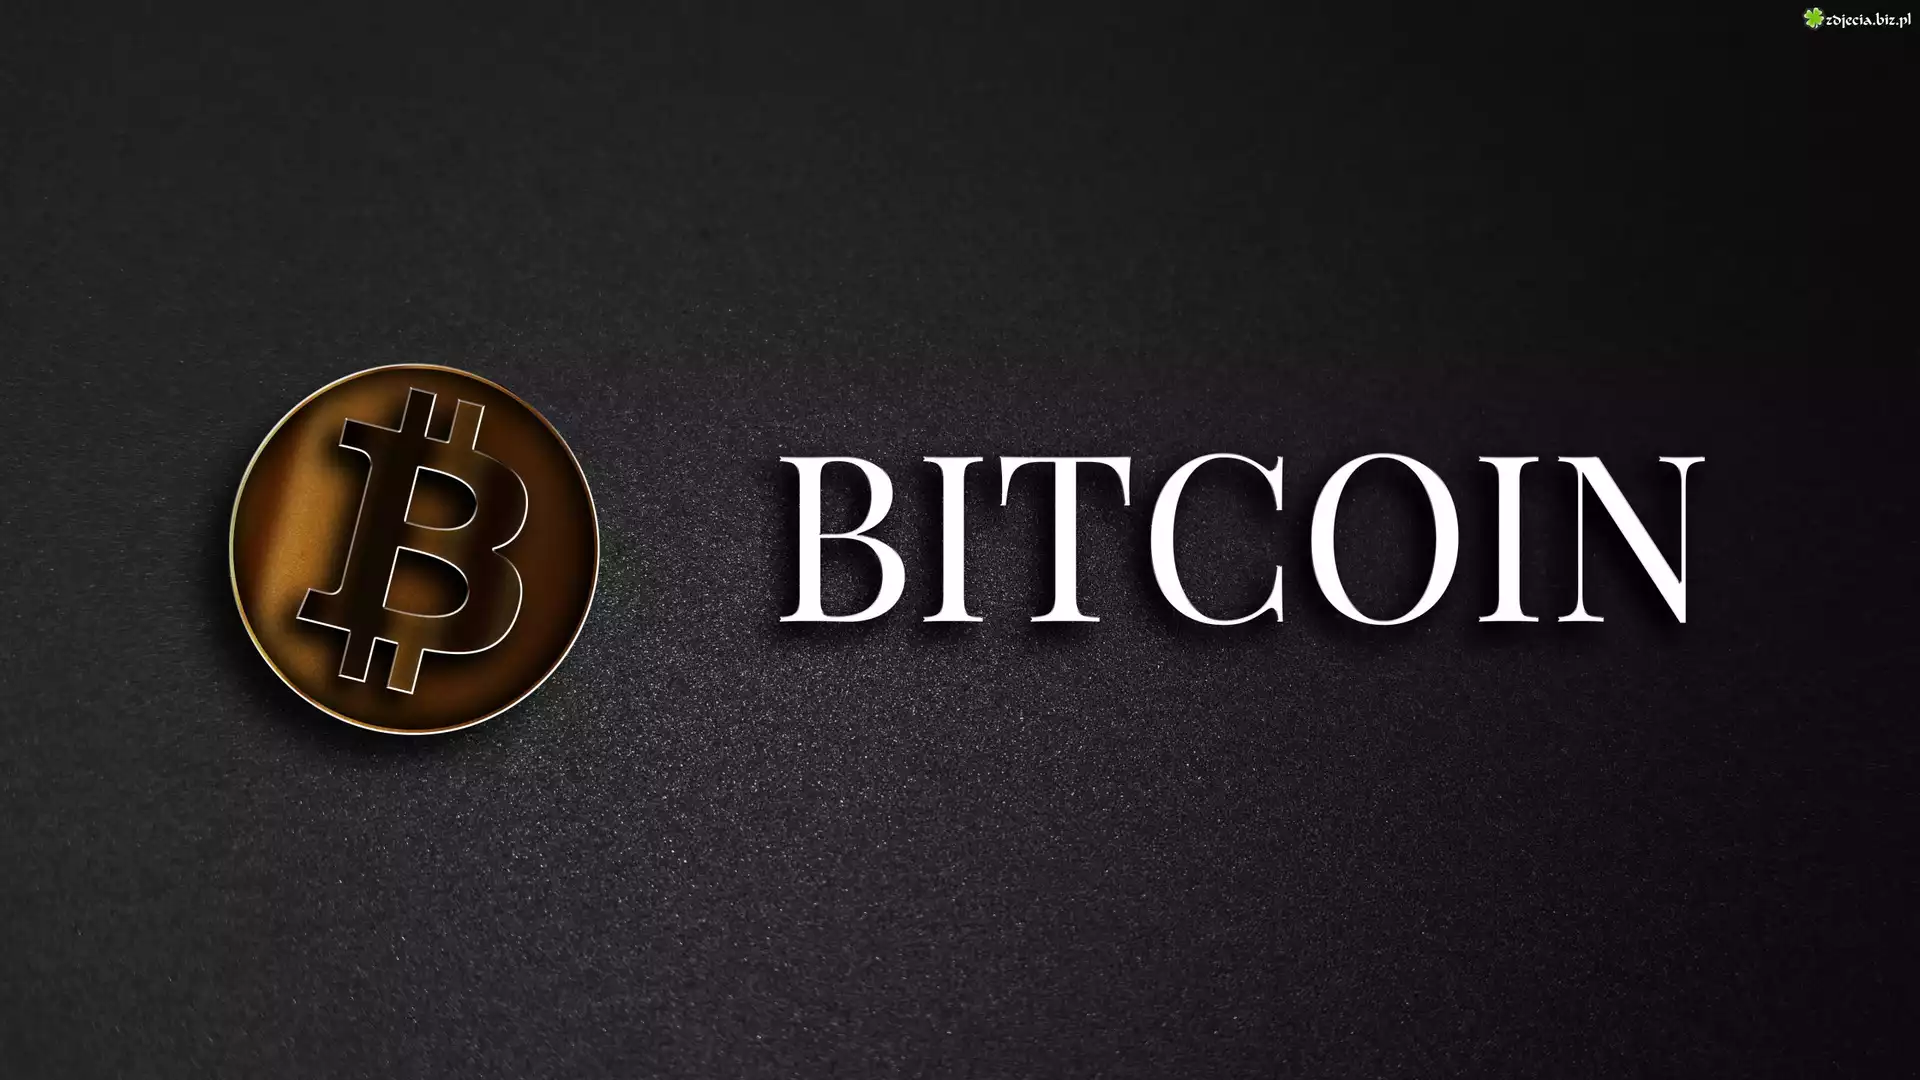 Bitcoin, Kryptowaluta, Logo, Ciemne tło